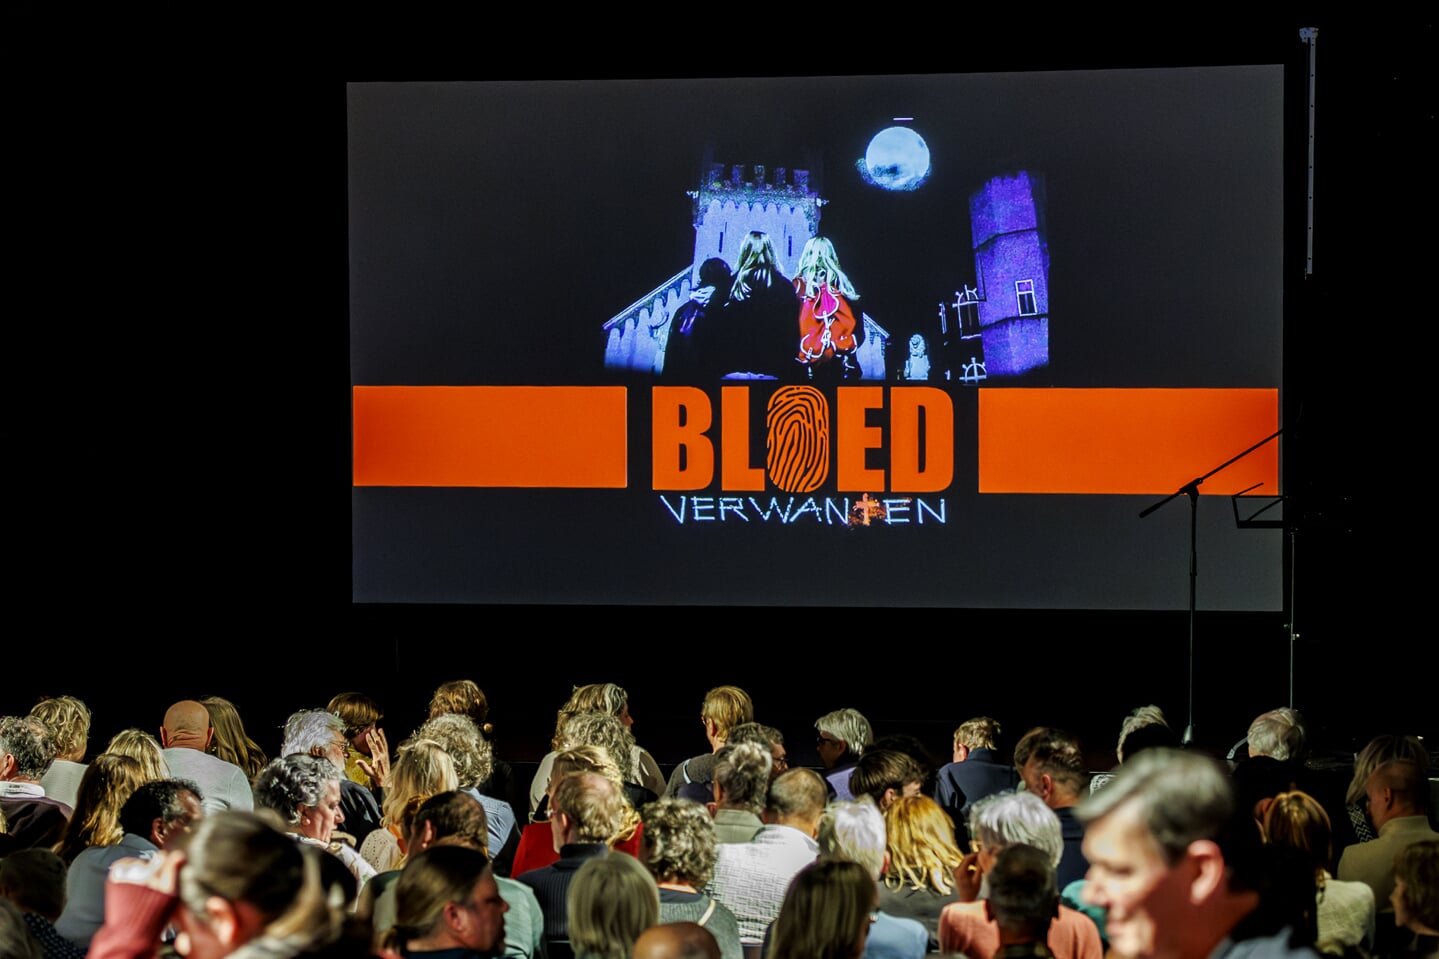 De première van de film Bloedverwanten was een succes. De cast en crew werden na afloop overladen met complimenten. 